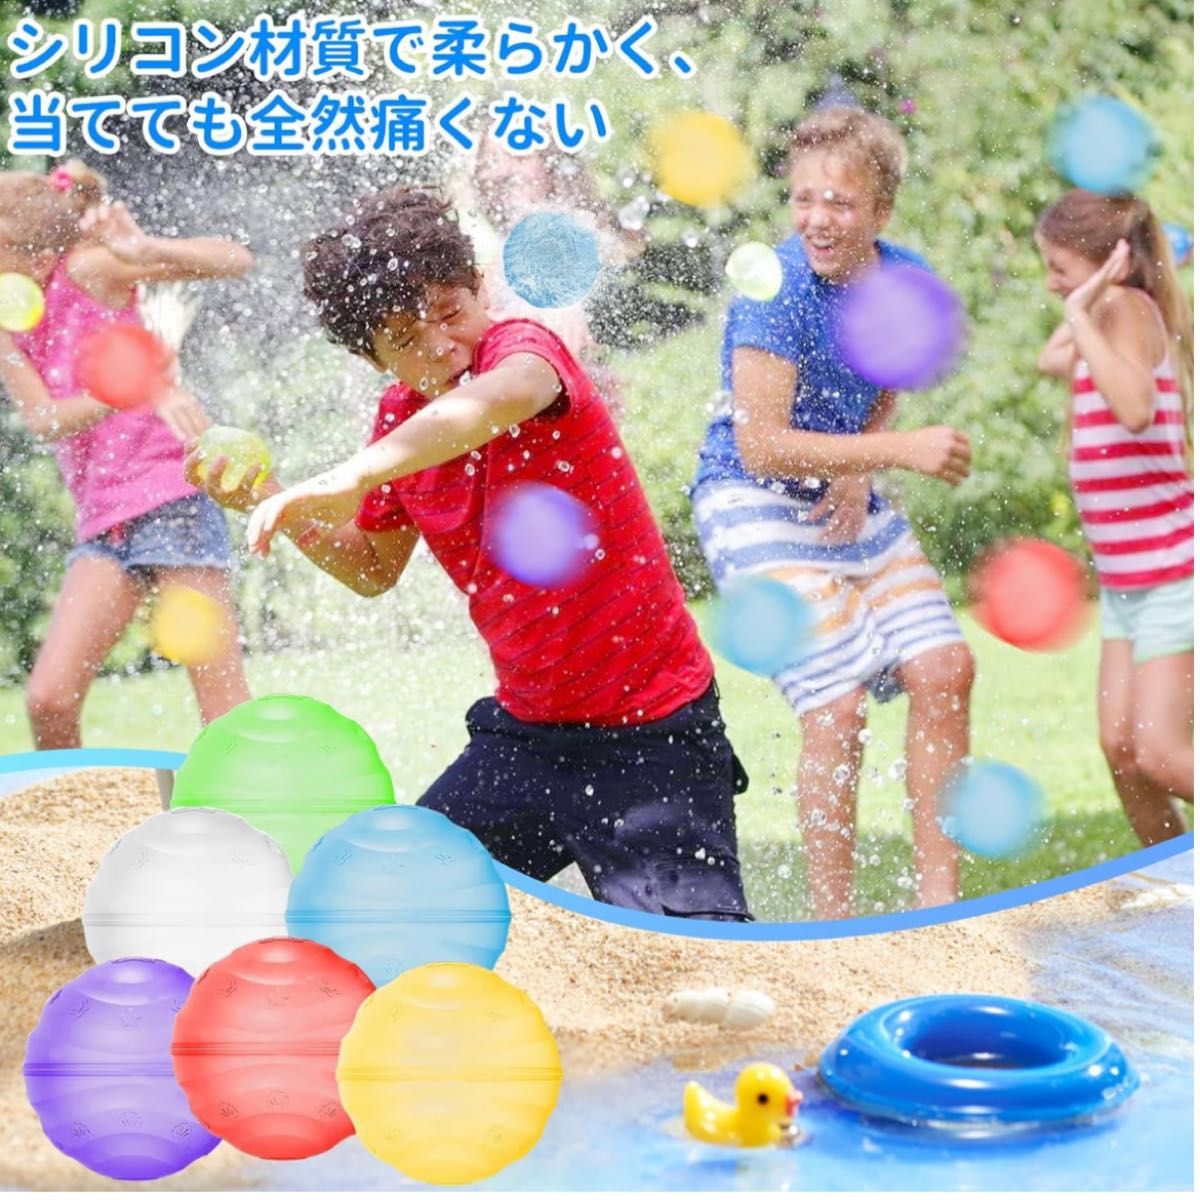 割れない水風船 【12個入り】 スプラッシュボール 繰り返し利用可能 水風船